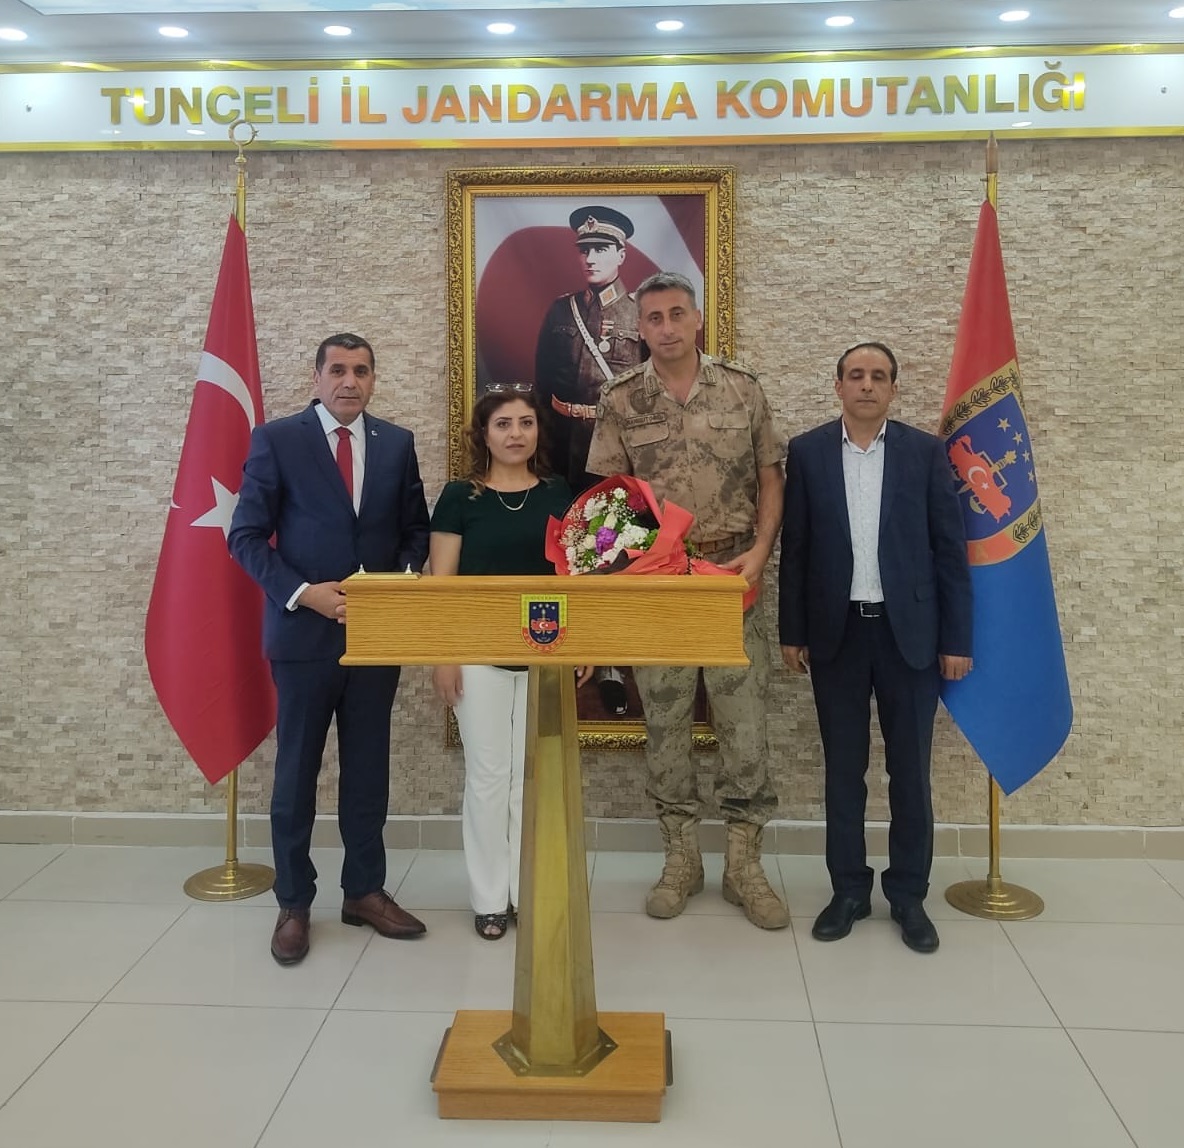 Jandarmamızın 184. kuruluş yıl dönümü dolayısıyla Tunceli İl jandarma Alay komutanlığını ziyarette bulunduk